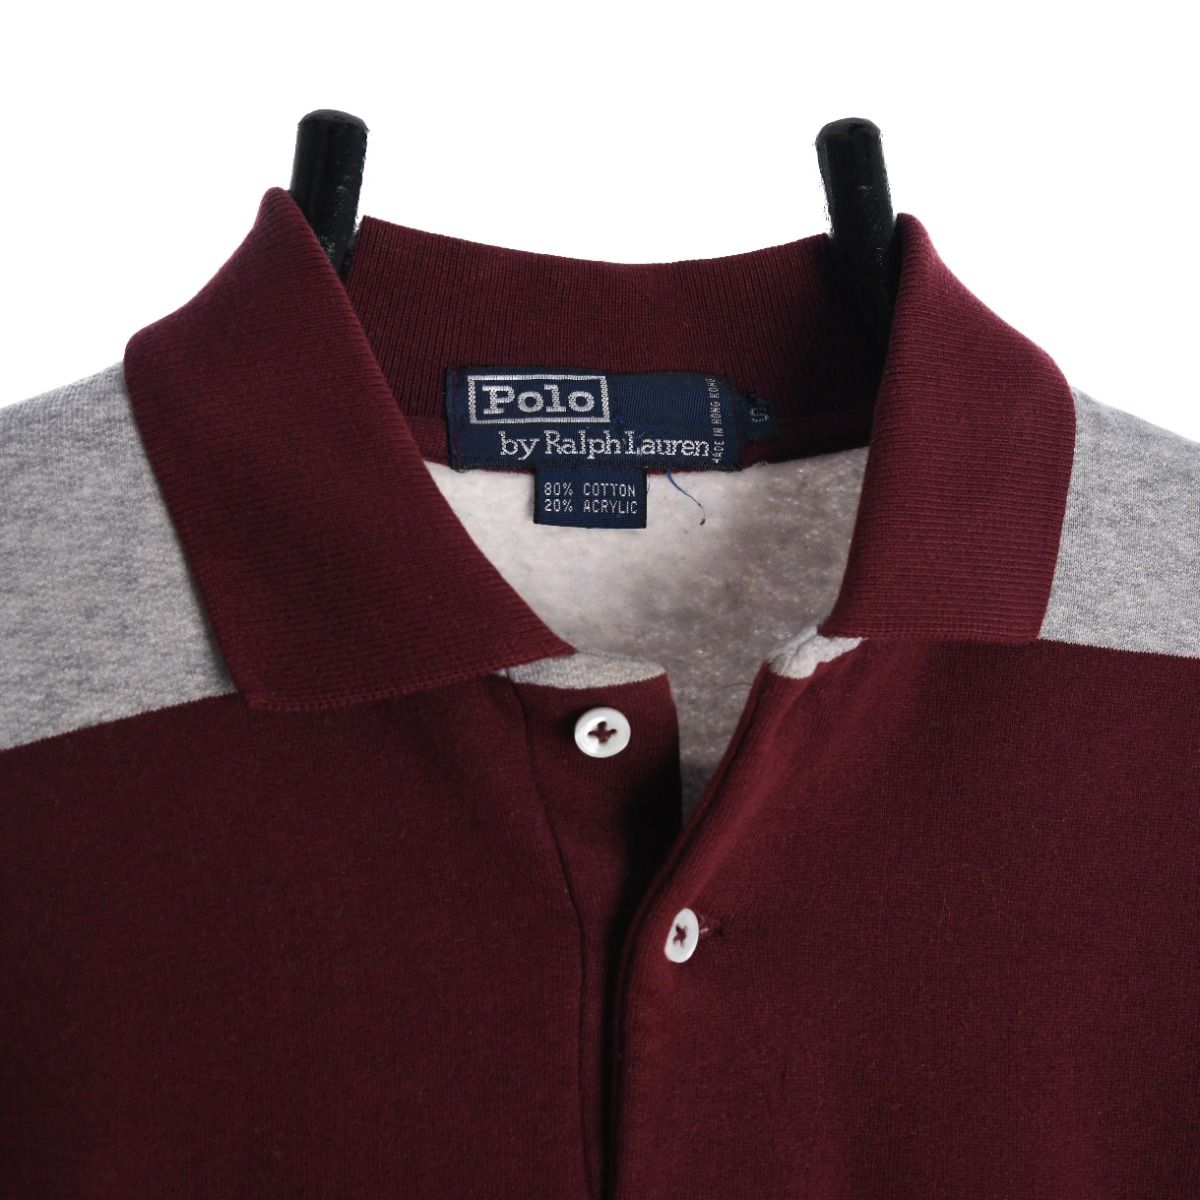 Polo Ralph Lauren 1990s Collared Sweatshirt